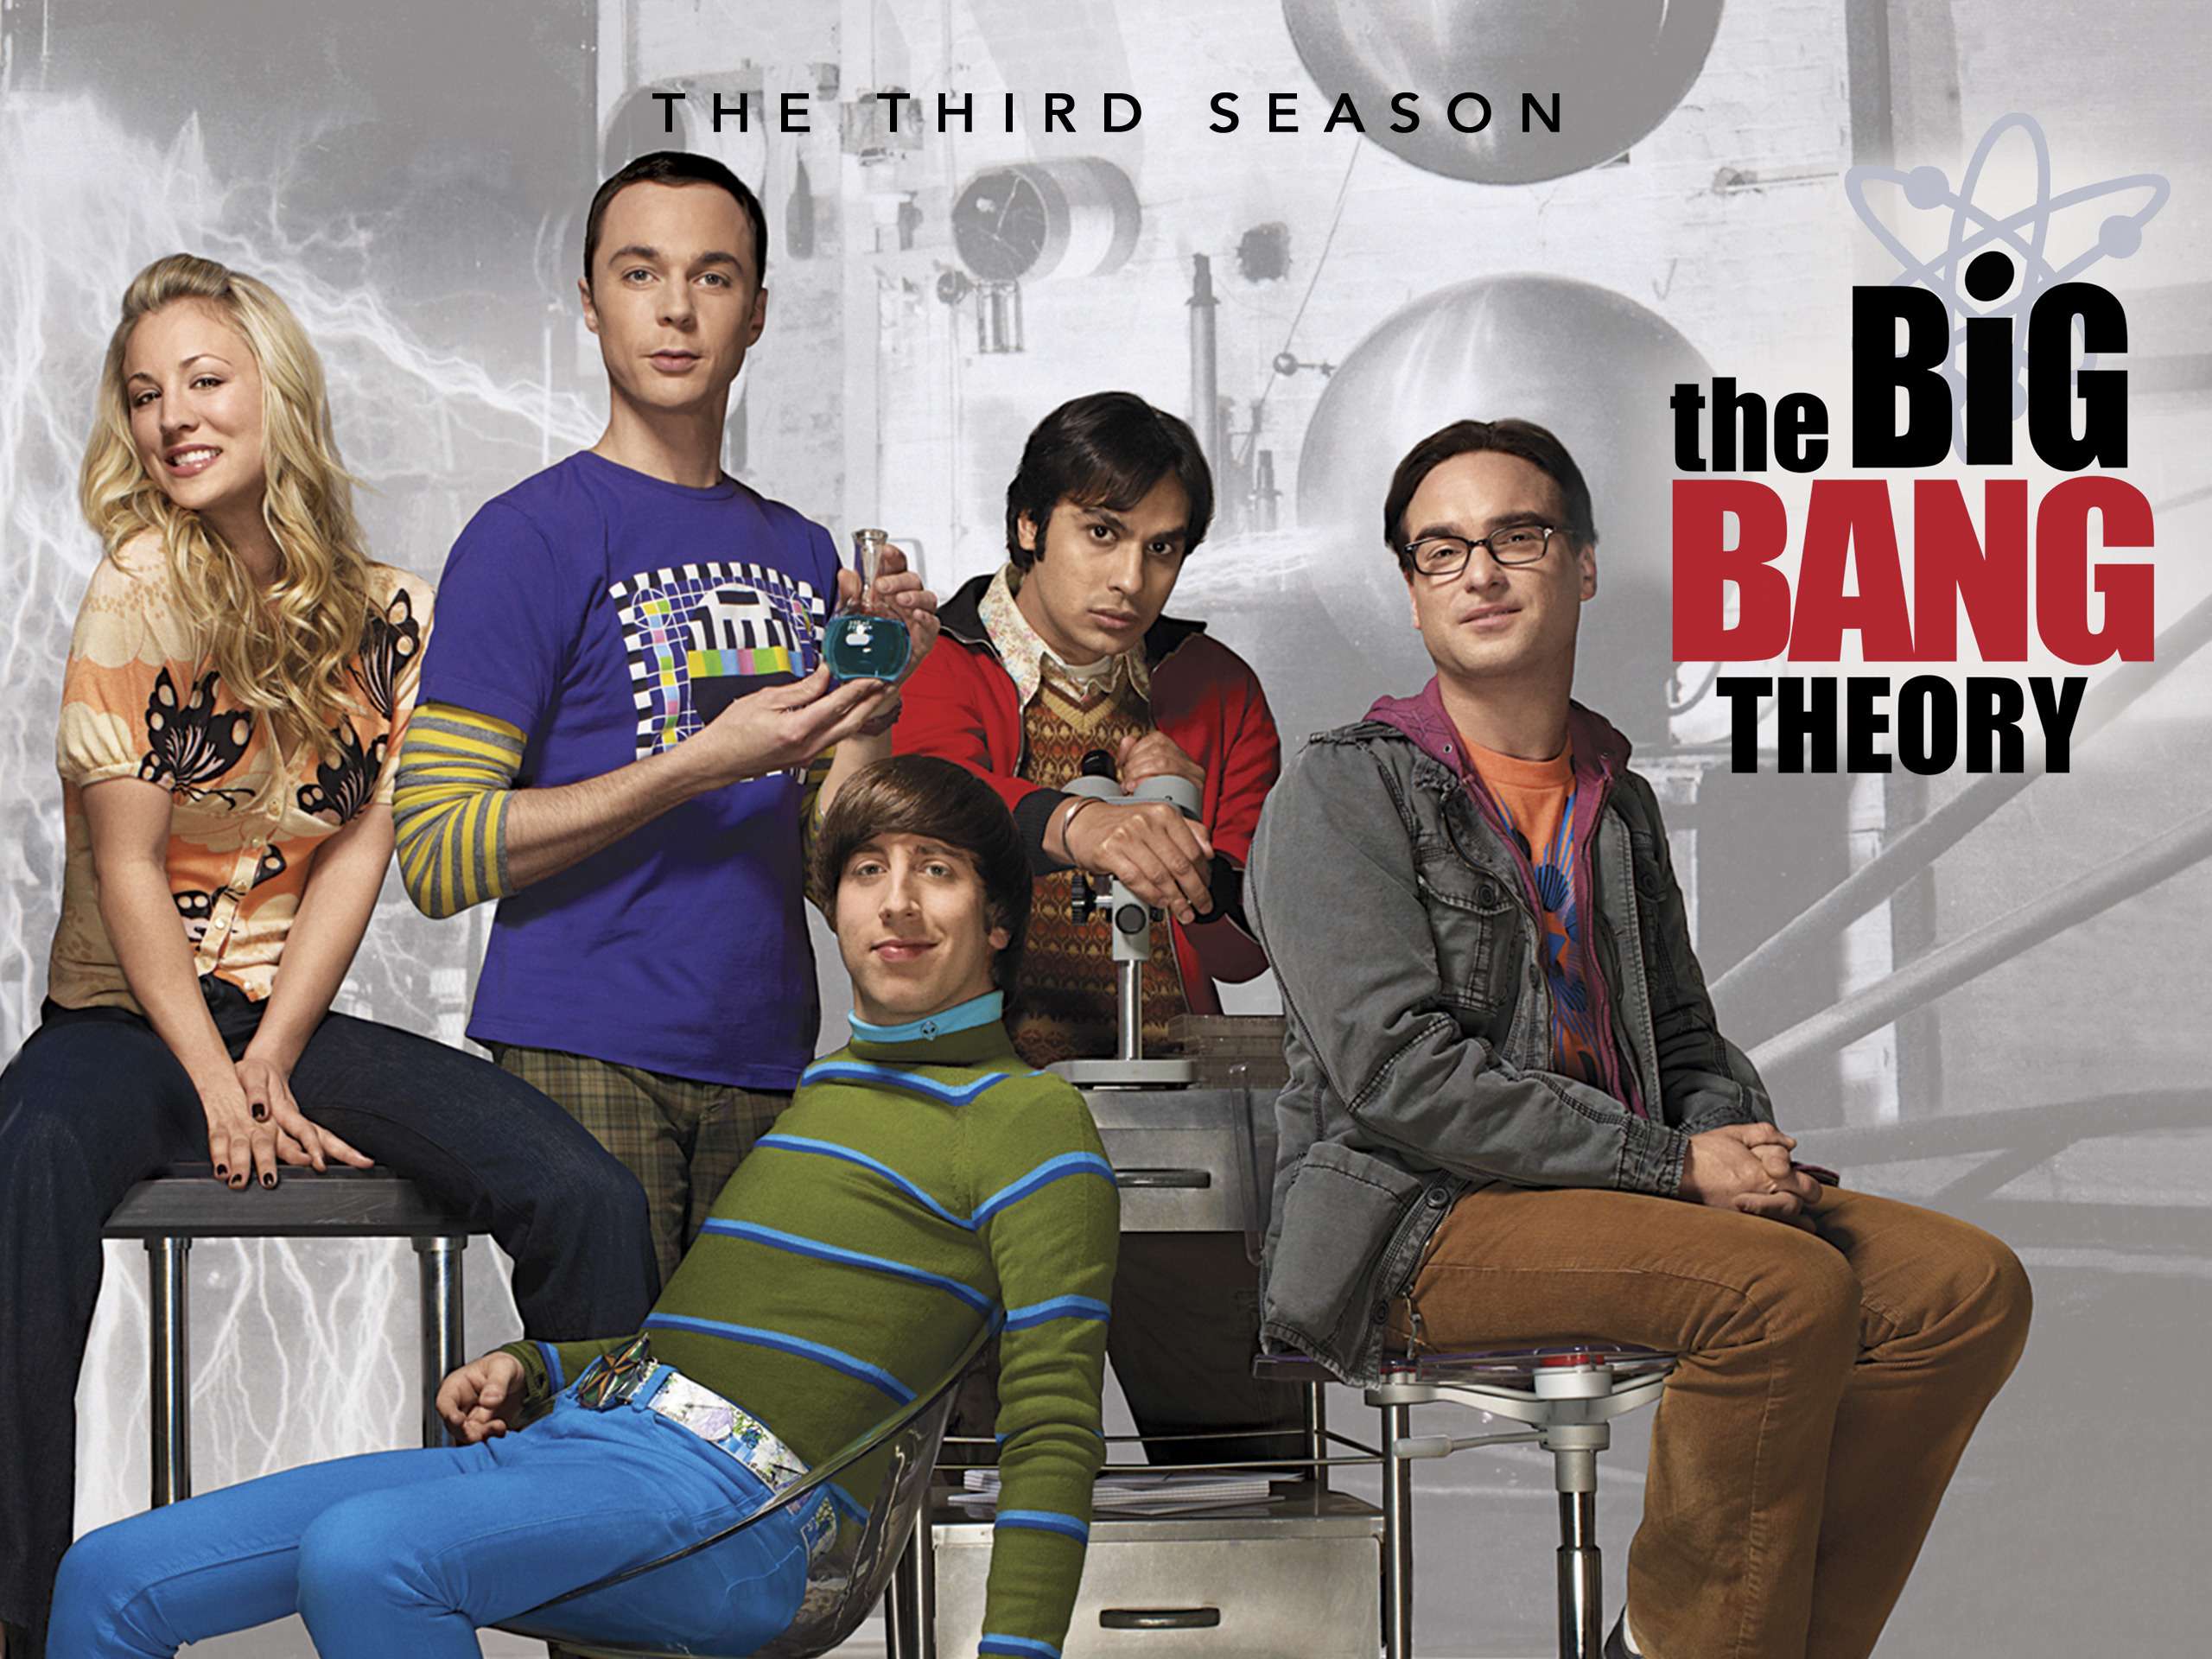 The big bang theory series season 3